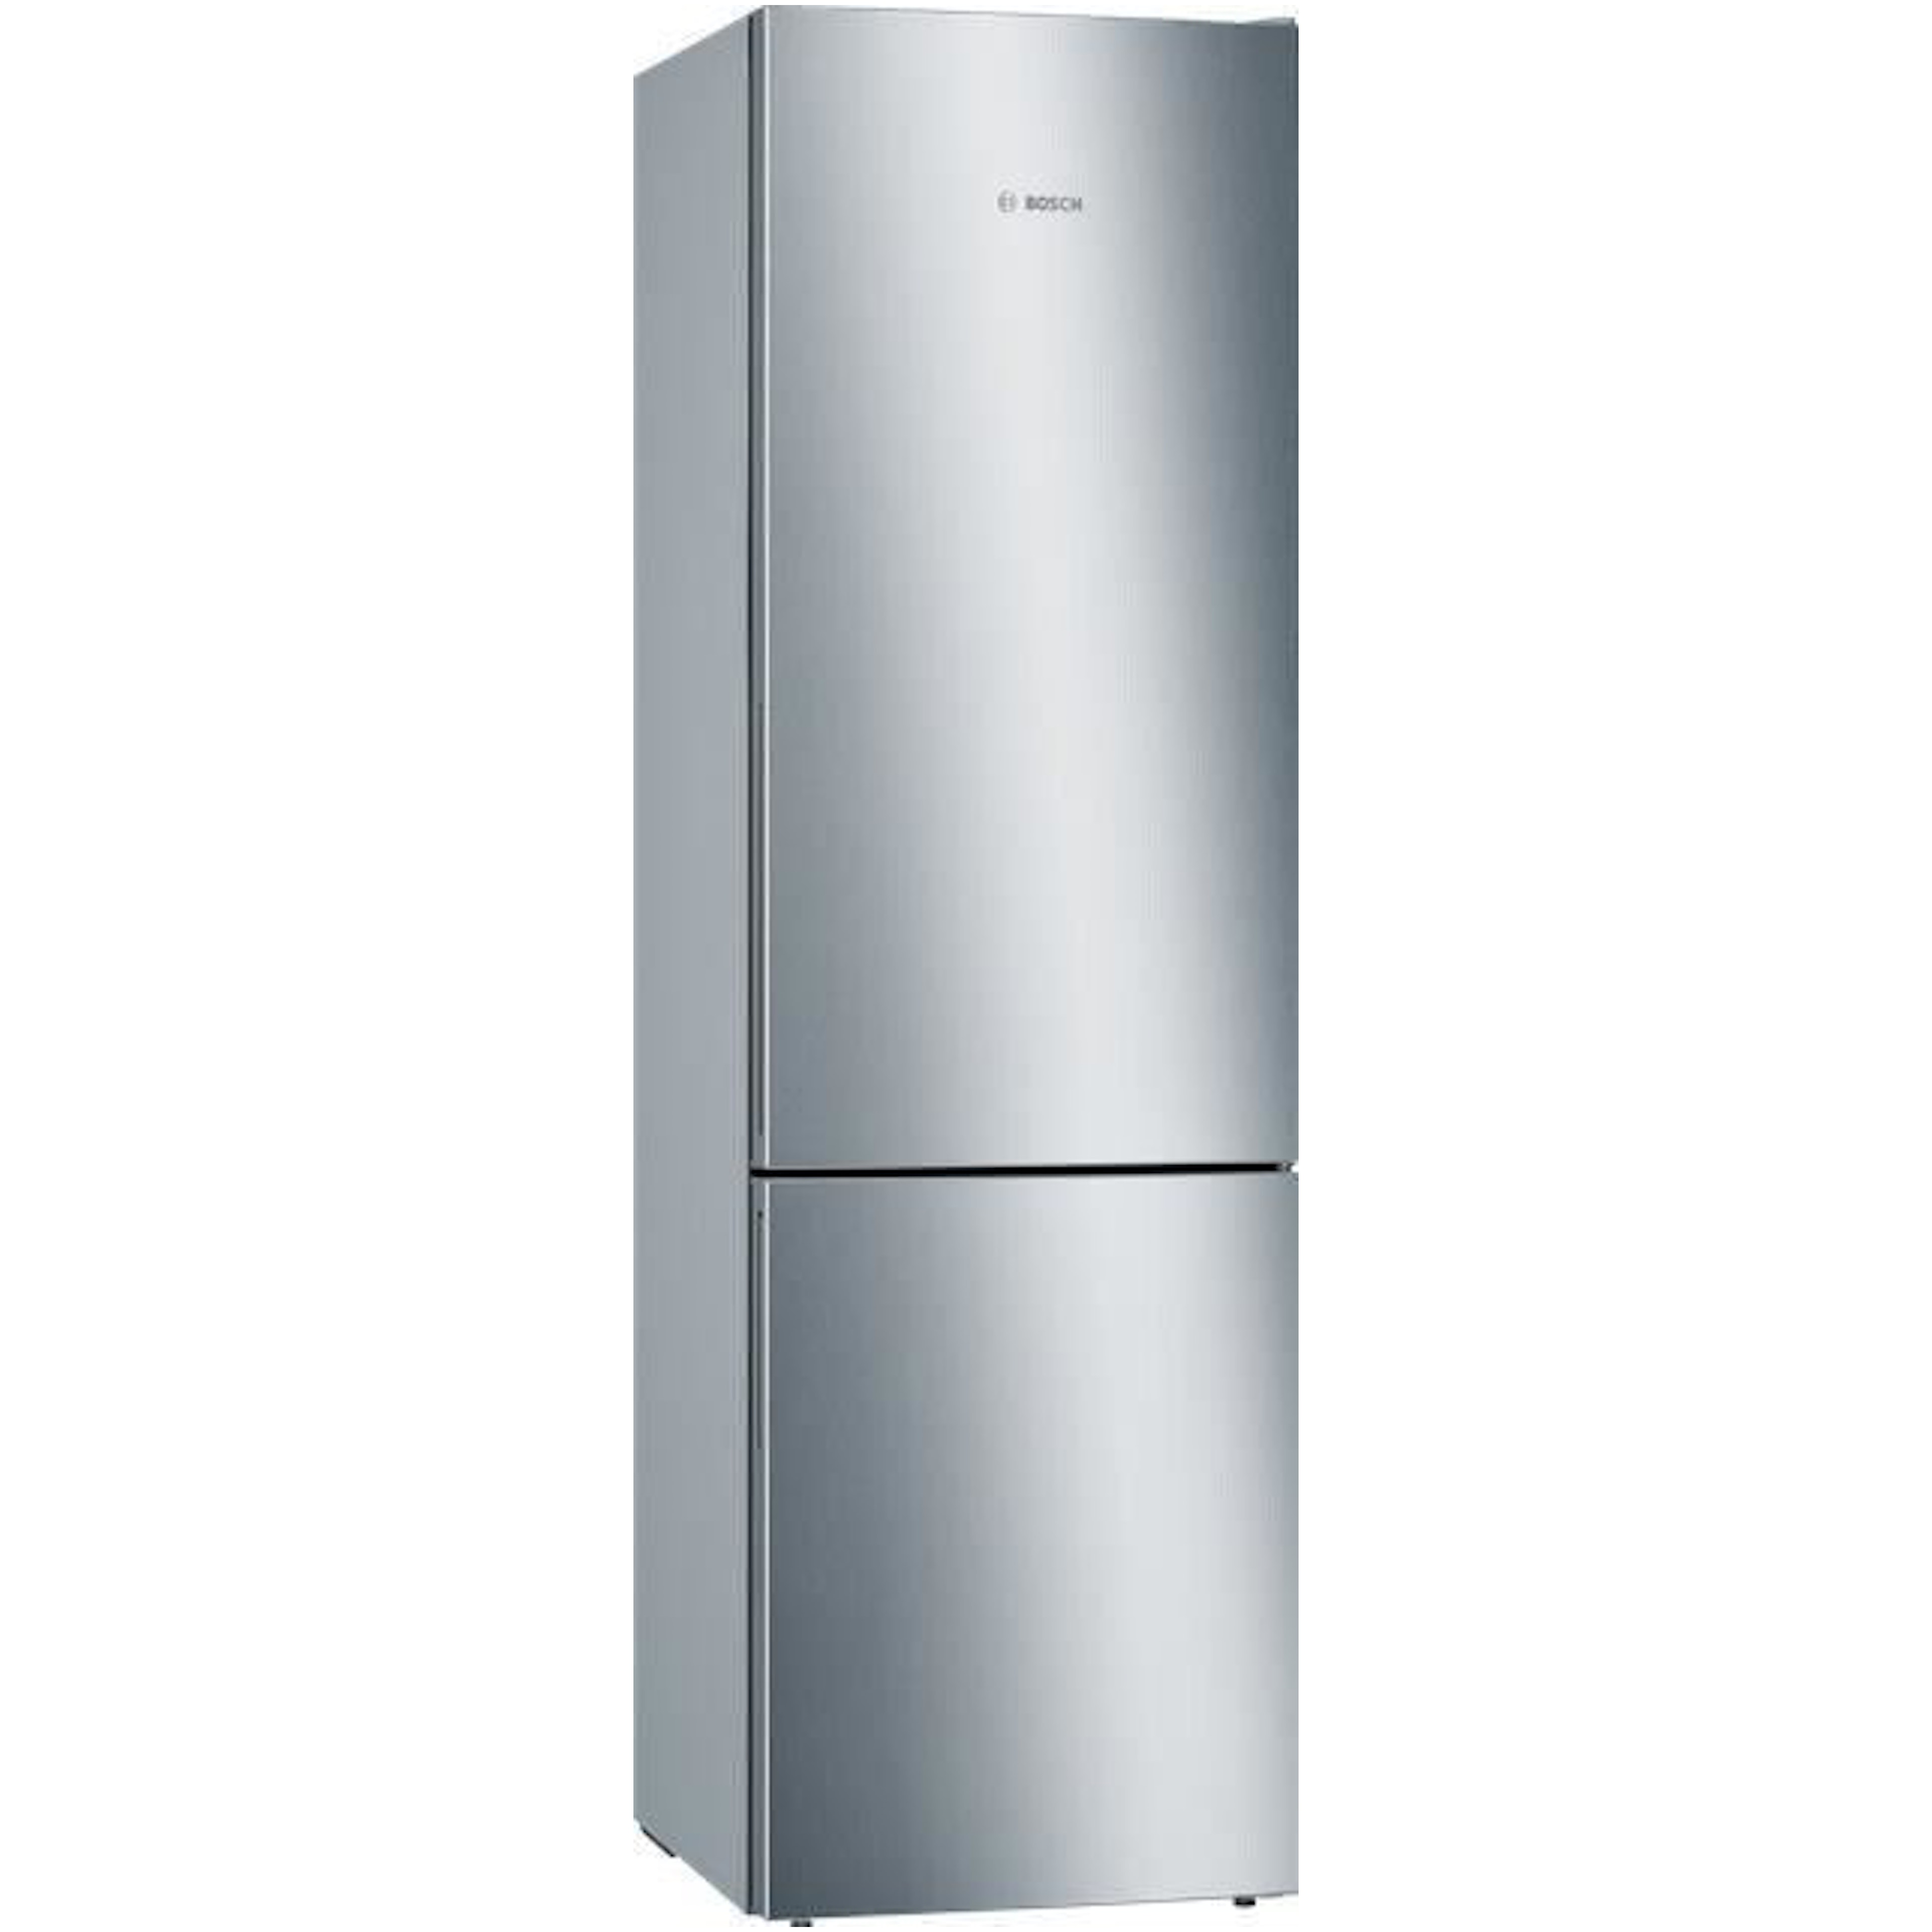 Спб купить холодильник недорого двухкамерный. LG GC-b459 SMUM. Bosch kgn39vi21r. Холодильник Bosch serie | 4 VITAFRESH kgn39vl24r. Холодильник LG ga-b509maum.